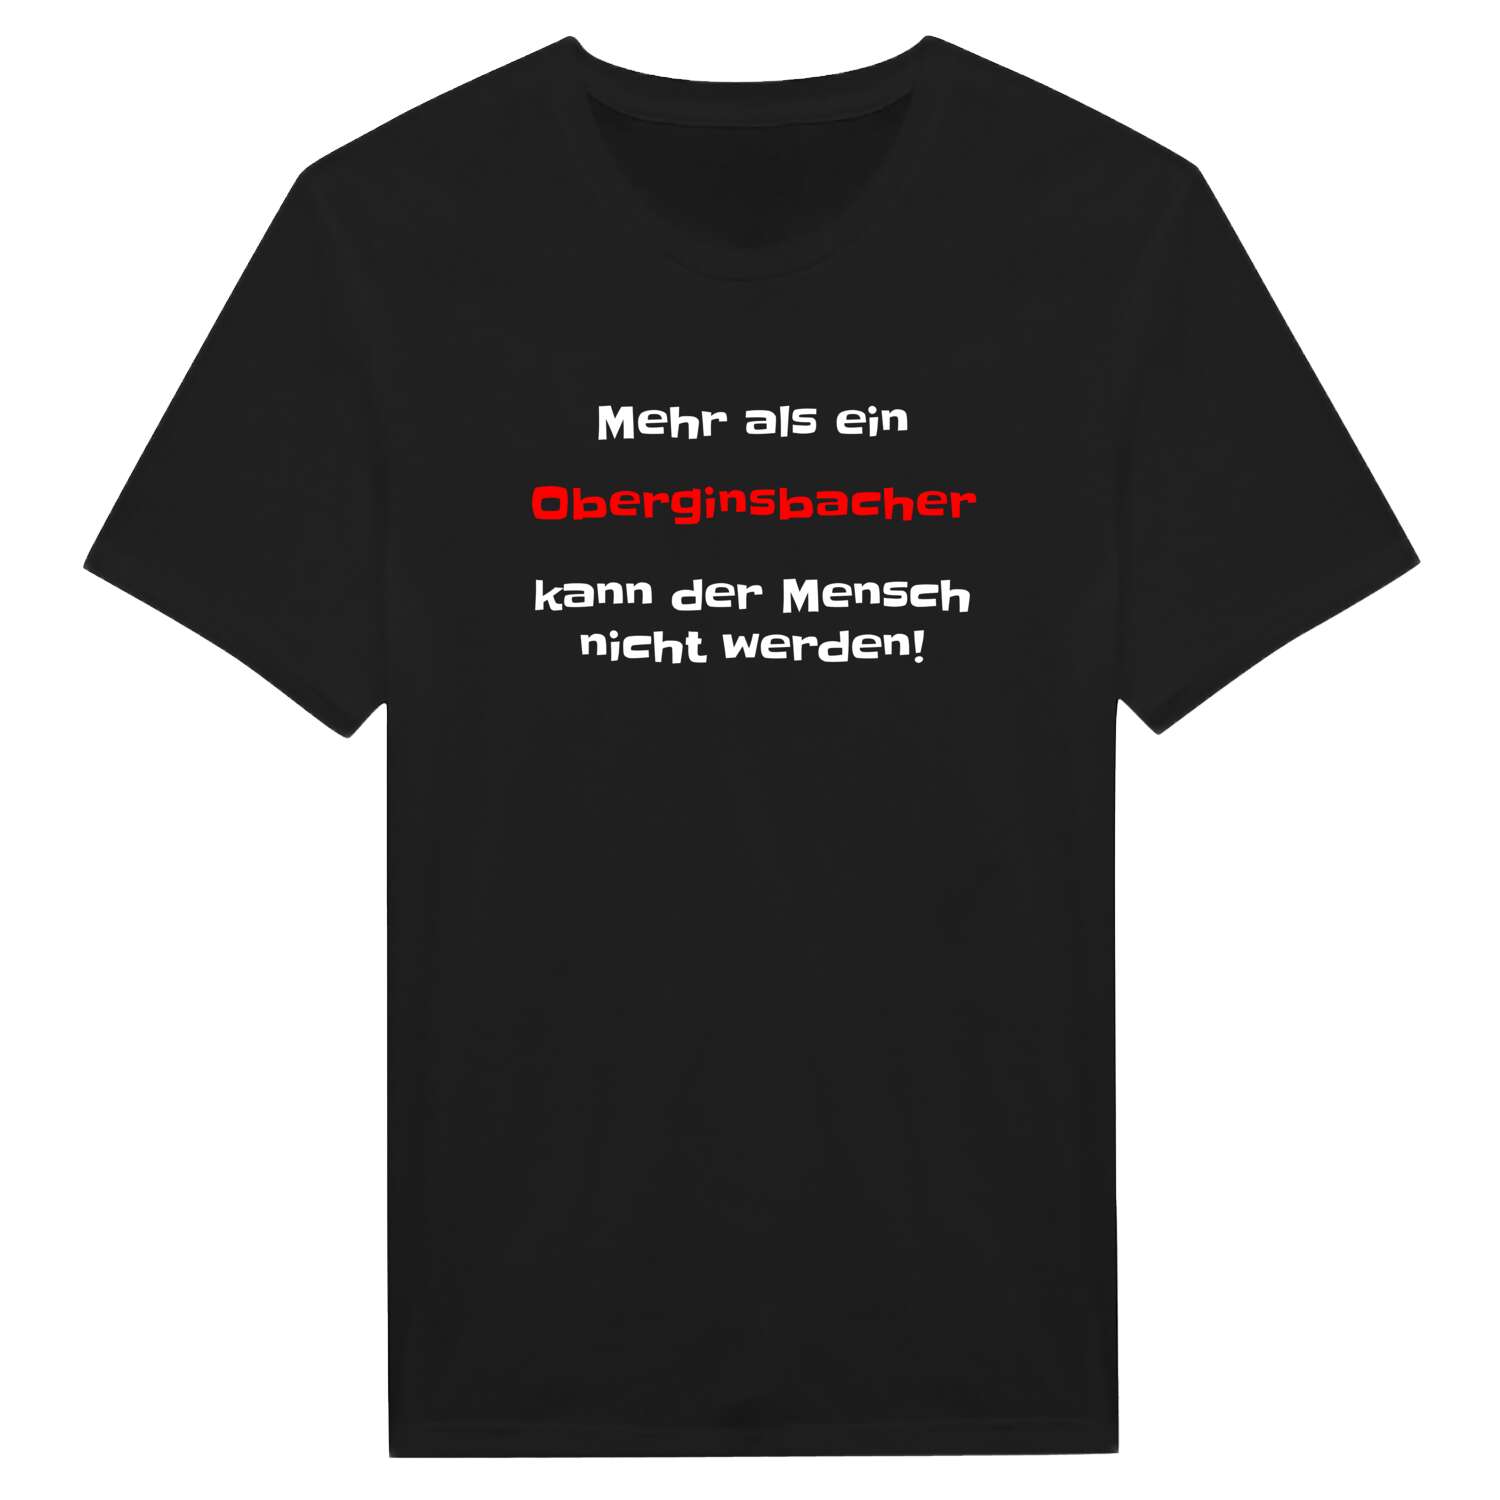 Oberginsbach T-Shirt »Mehr als ein«